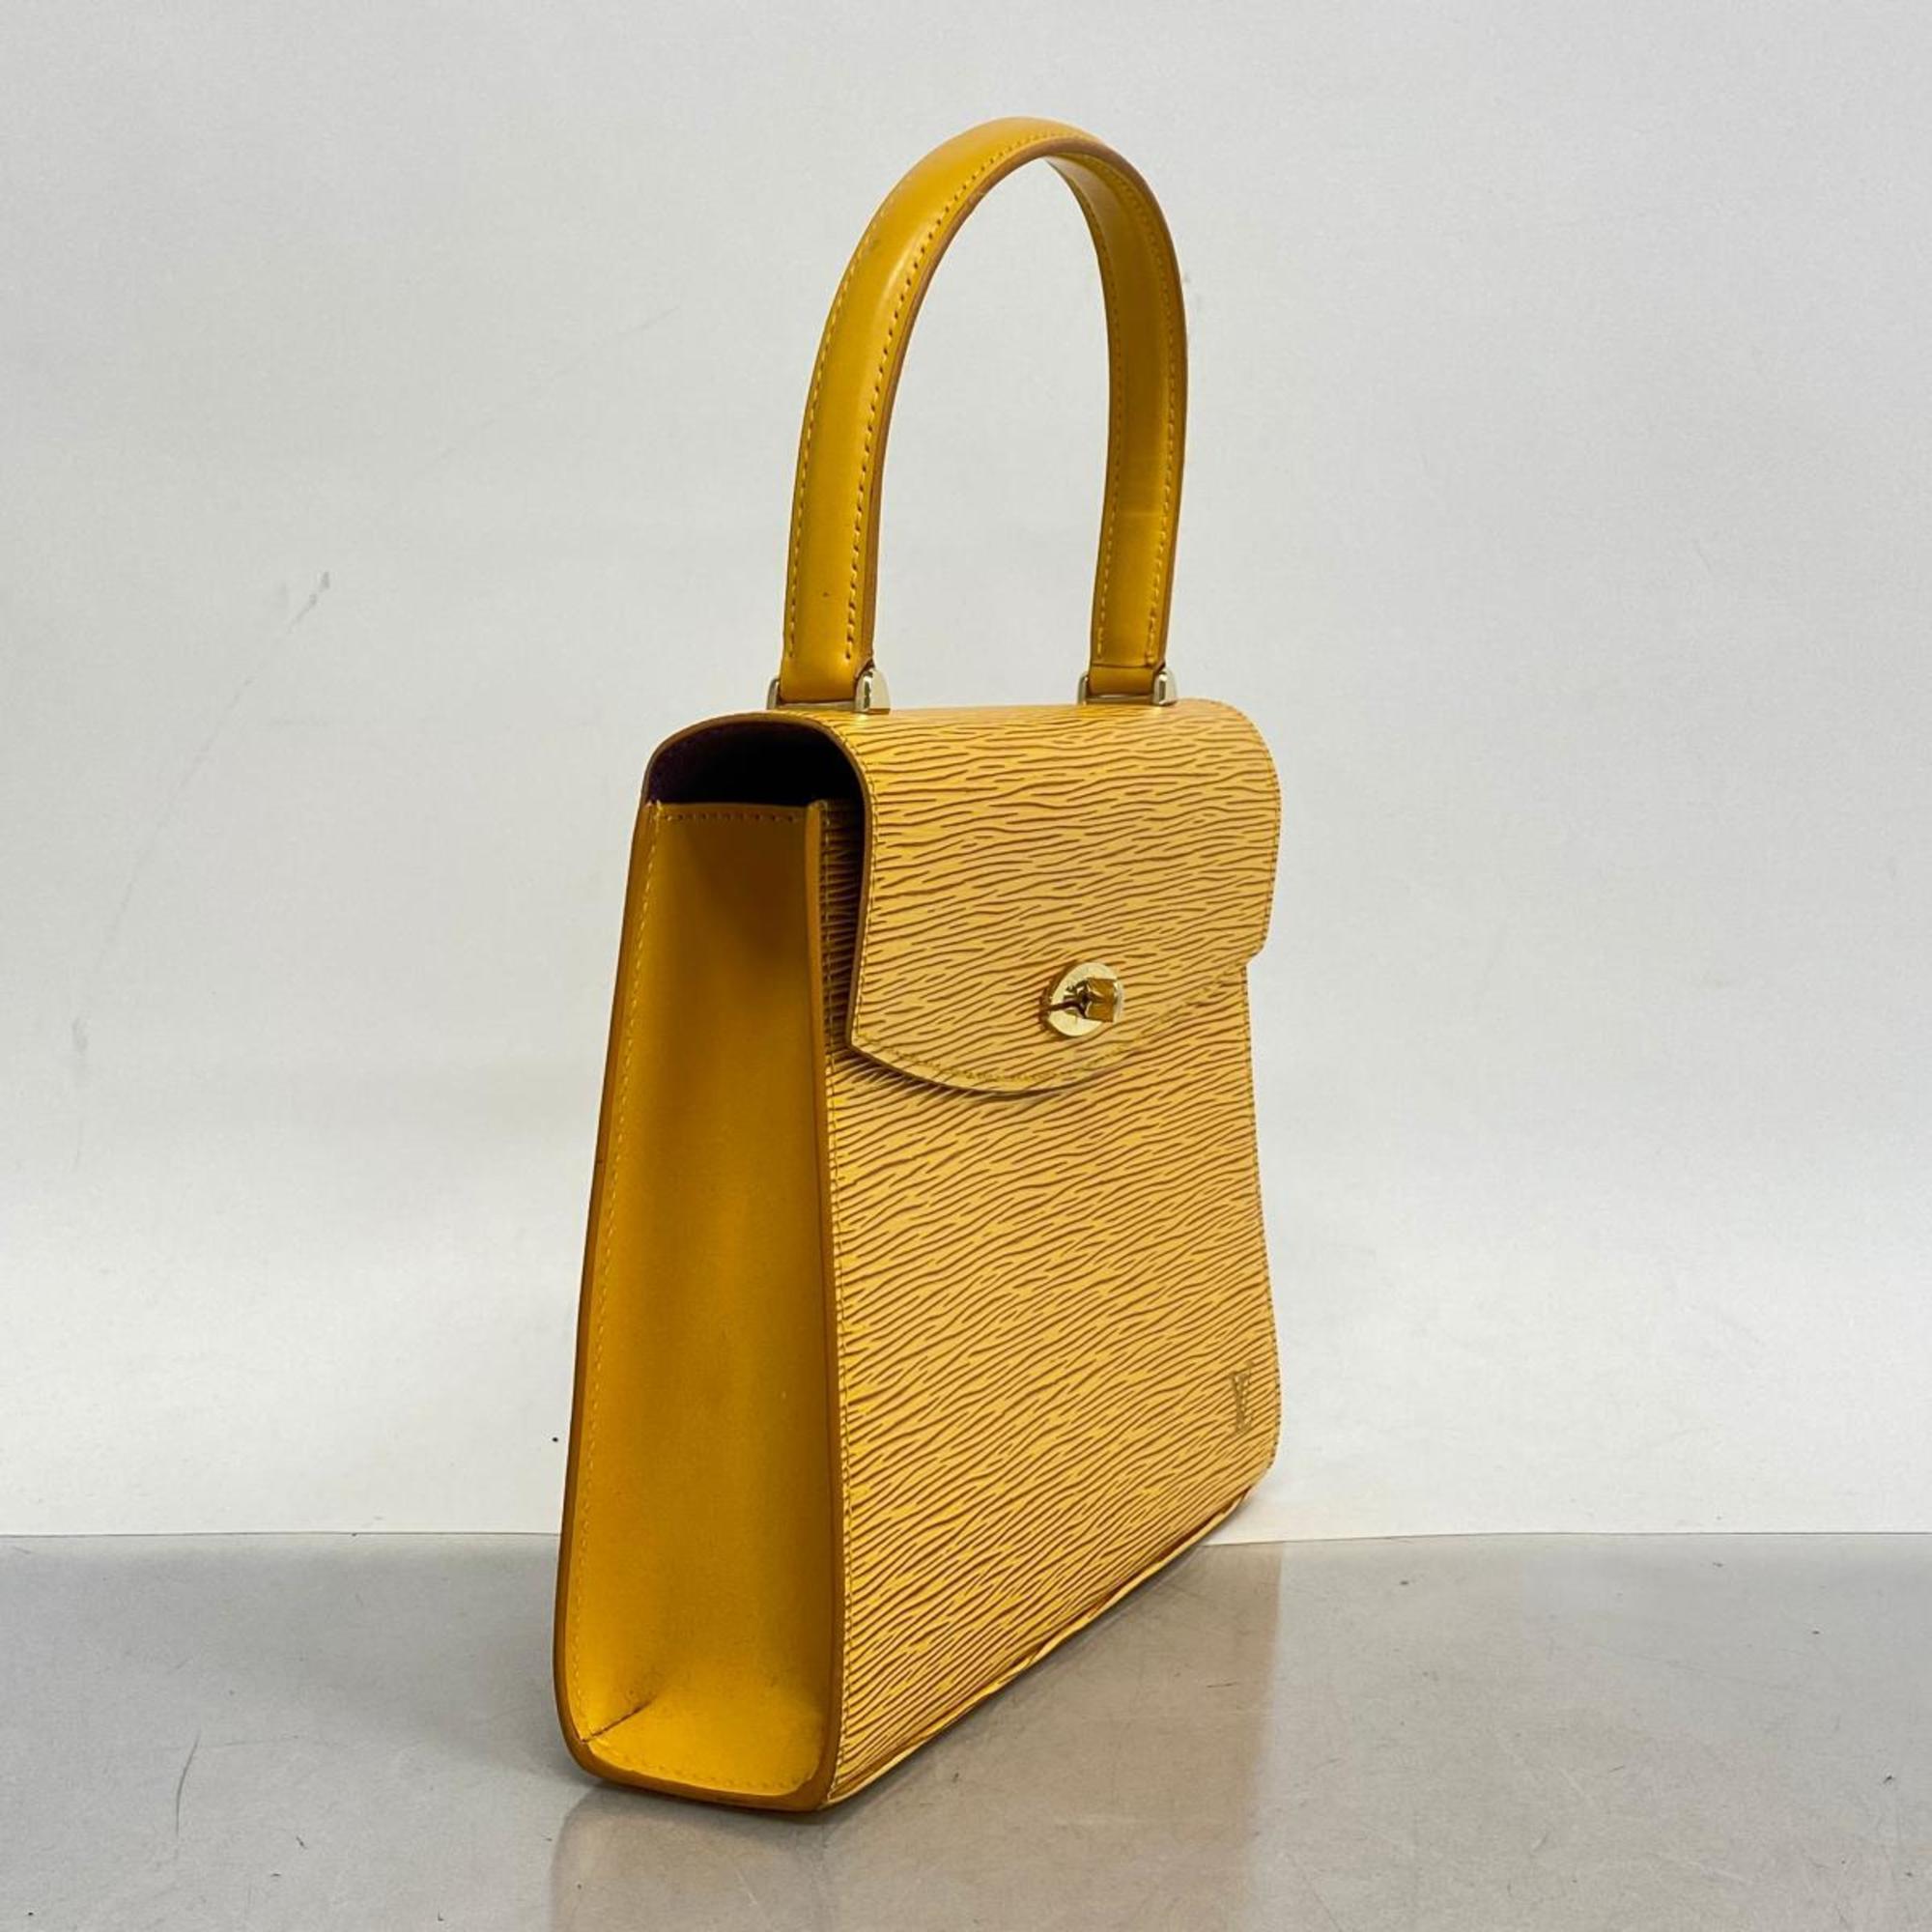 Louis Vuitton Epi Malesherbes Handbag M52379 Jaune Ladies